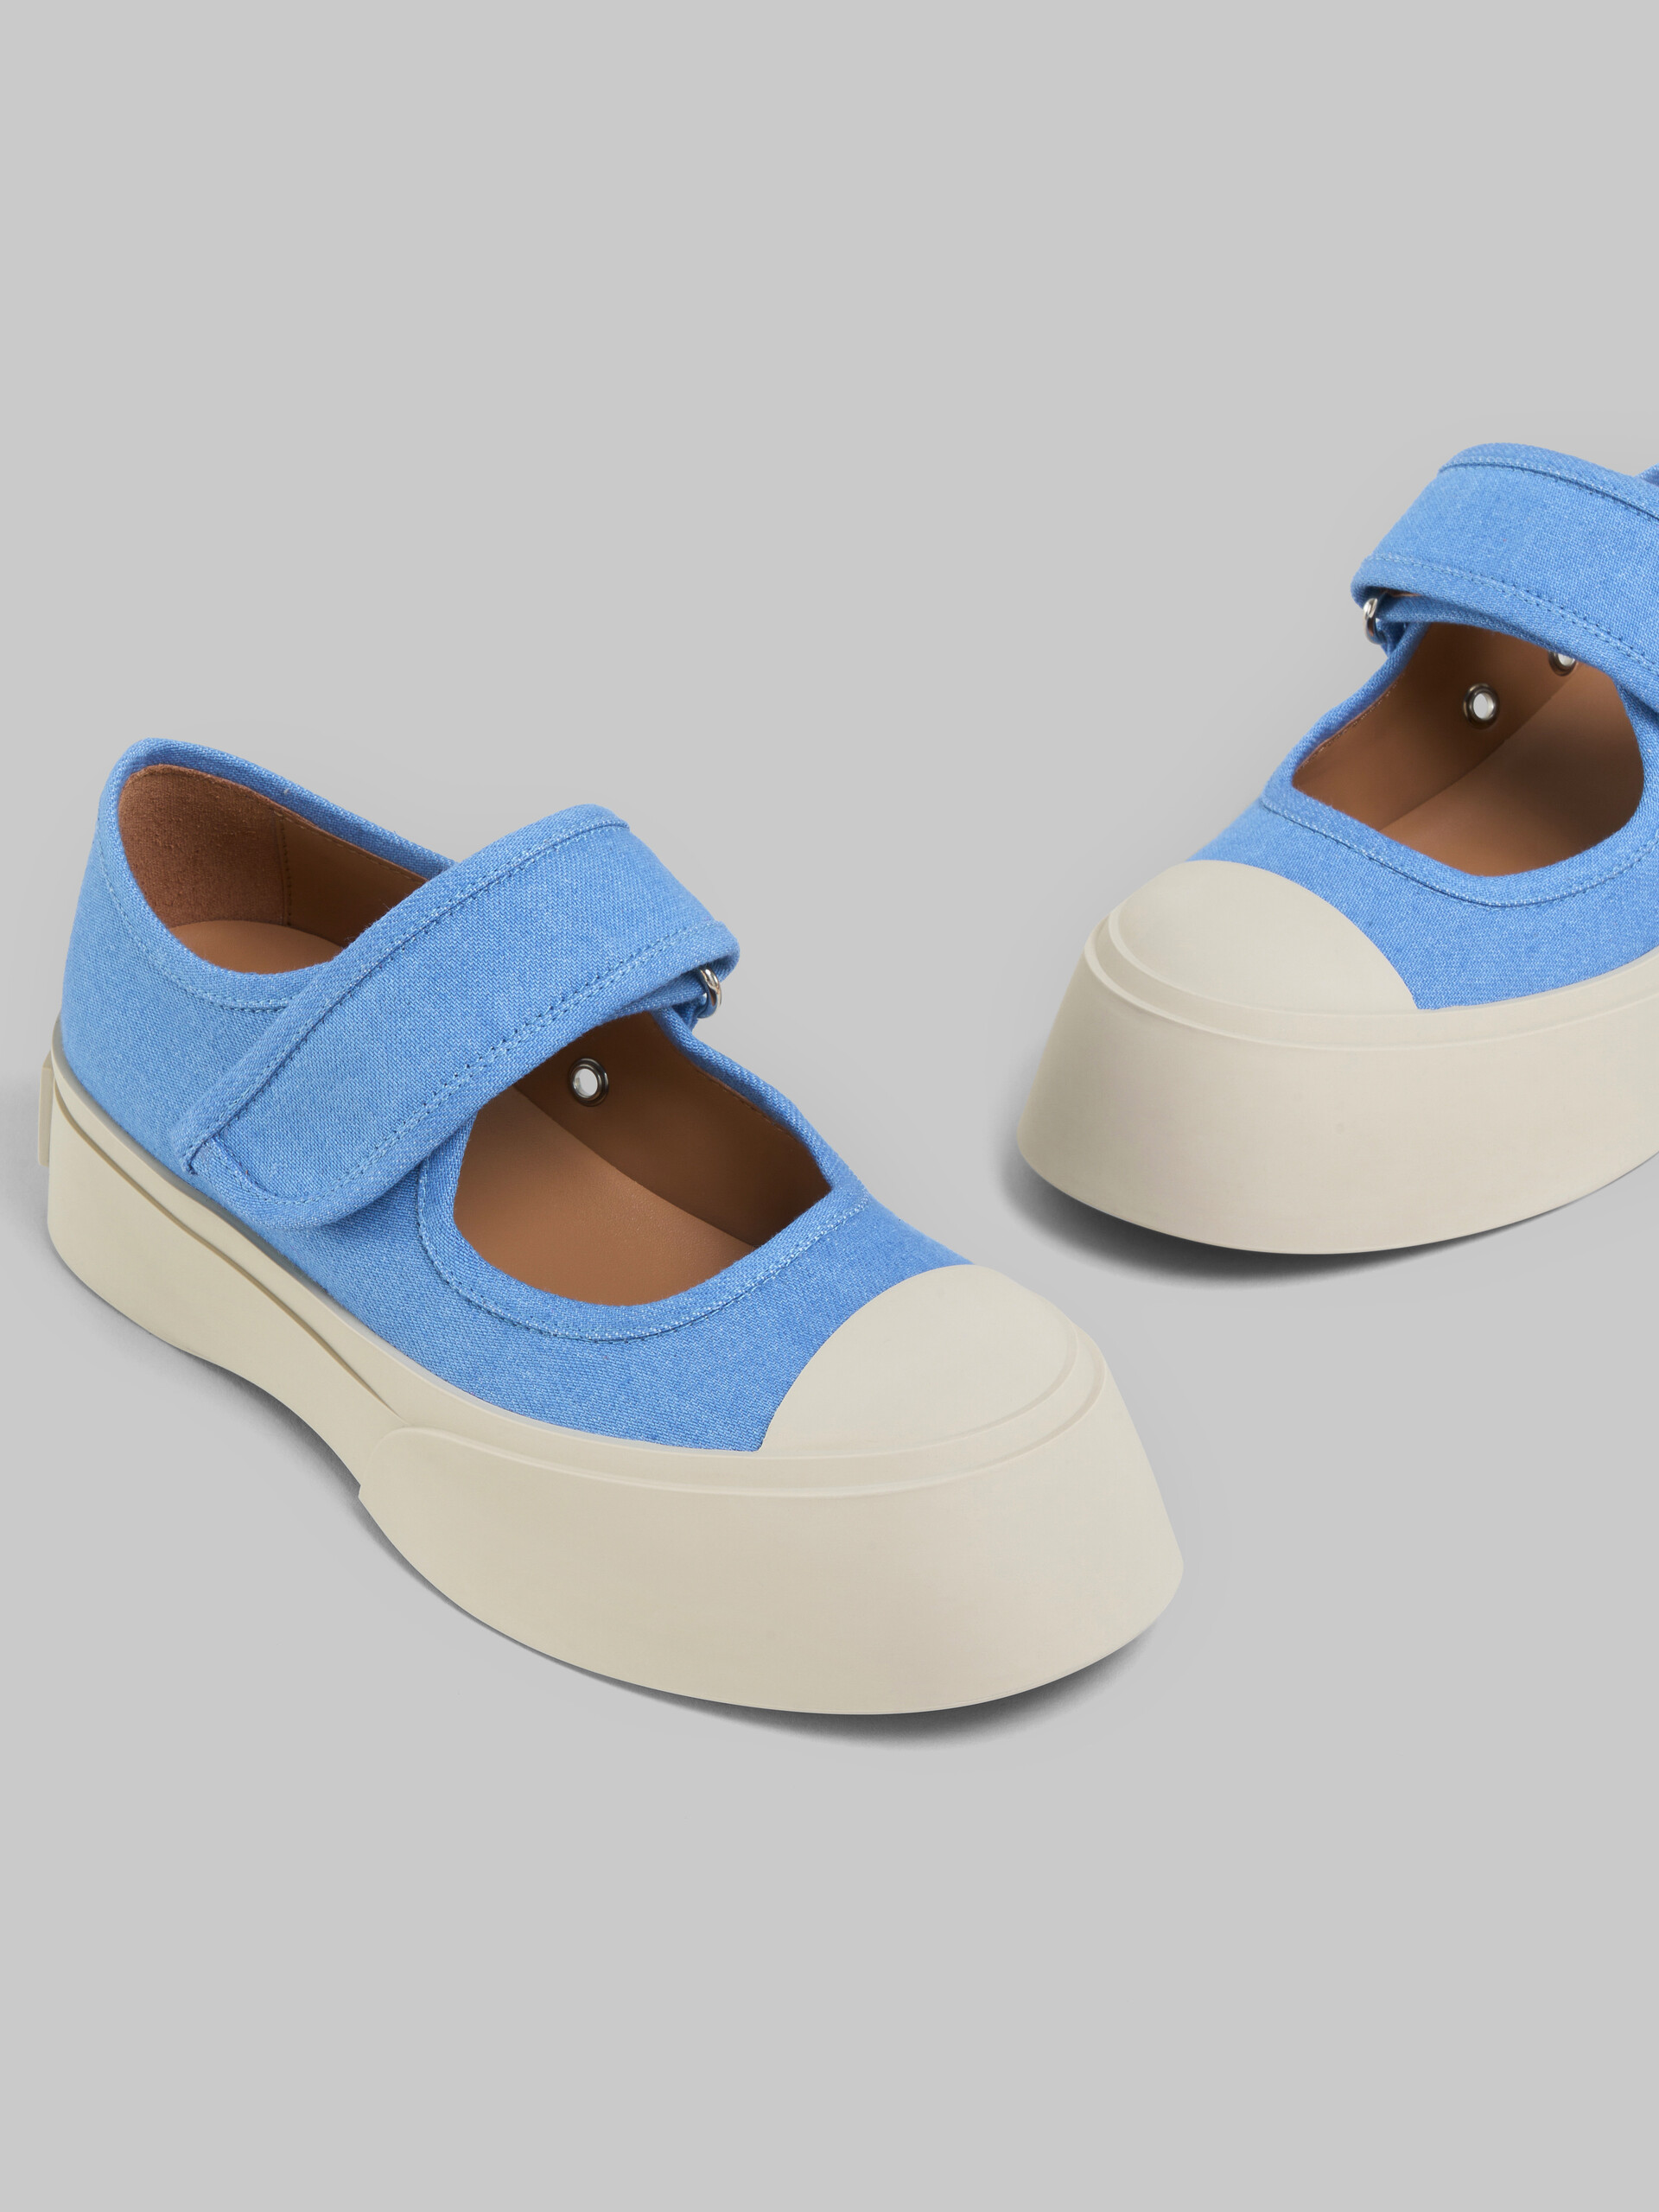 Hellblaue Mary Jane-Sneakers aus Denim - Sneakers - Image 5